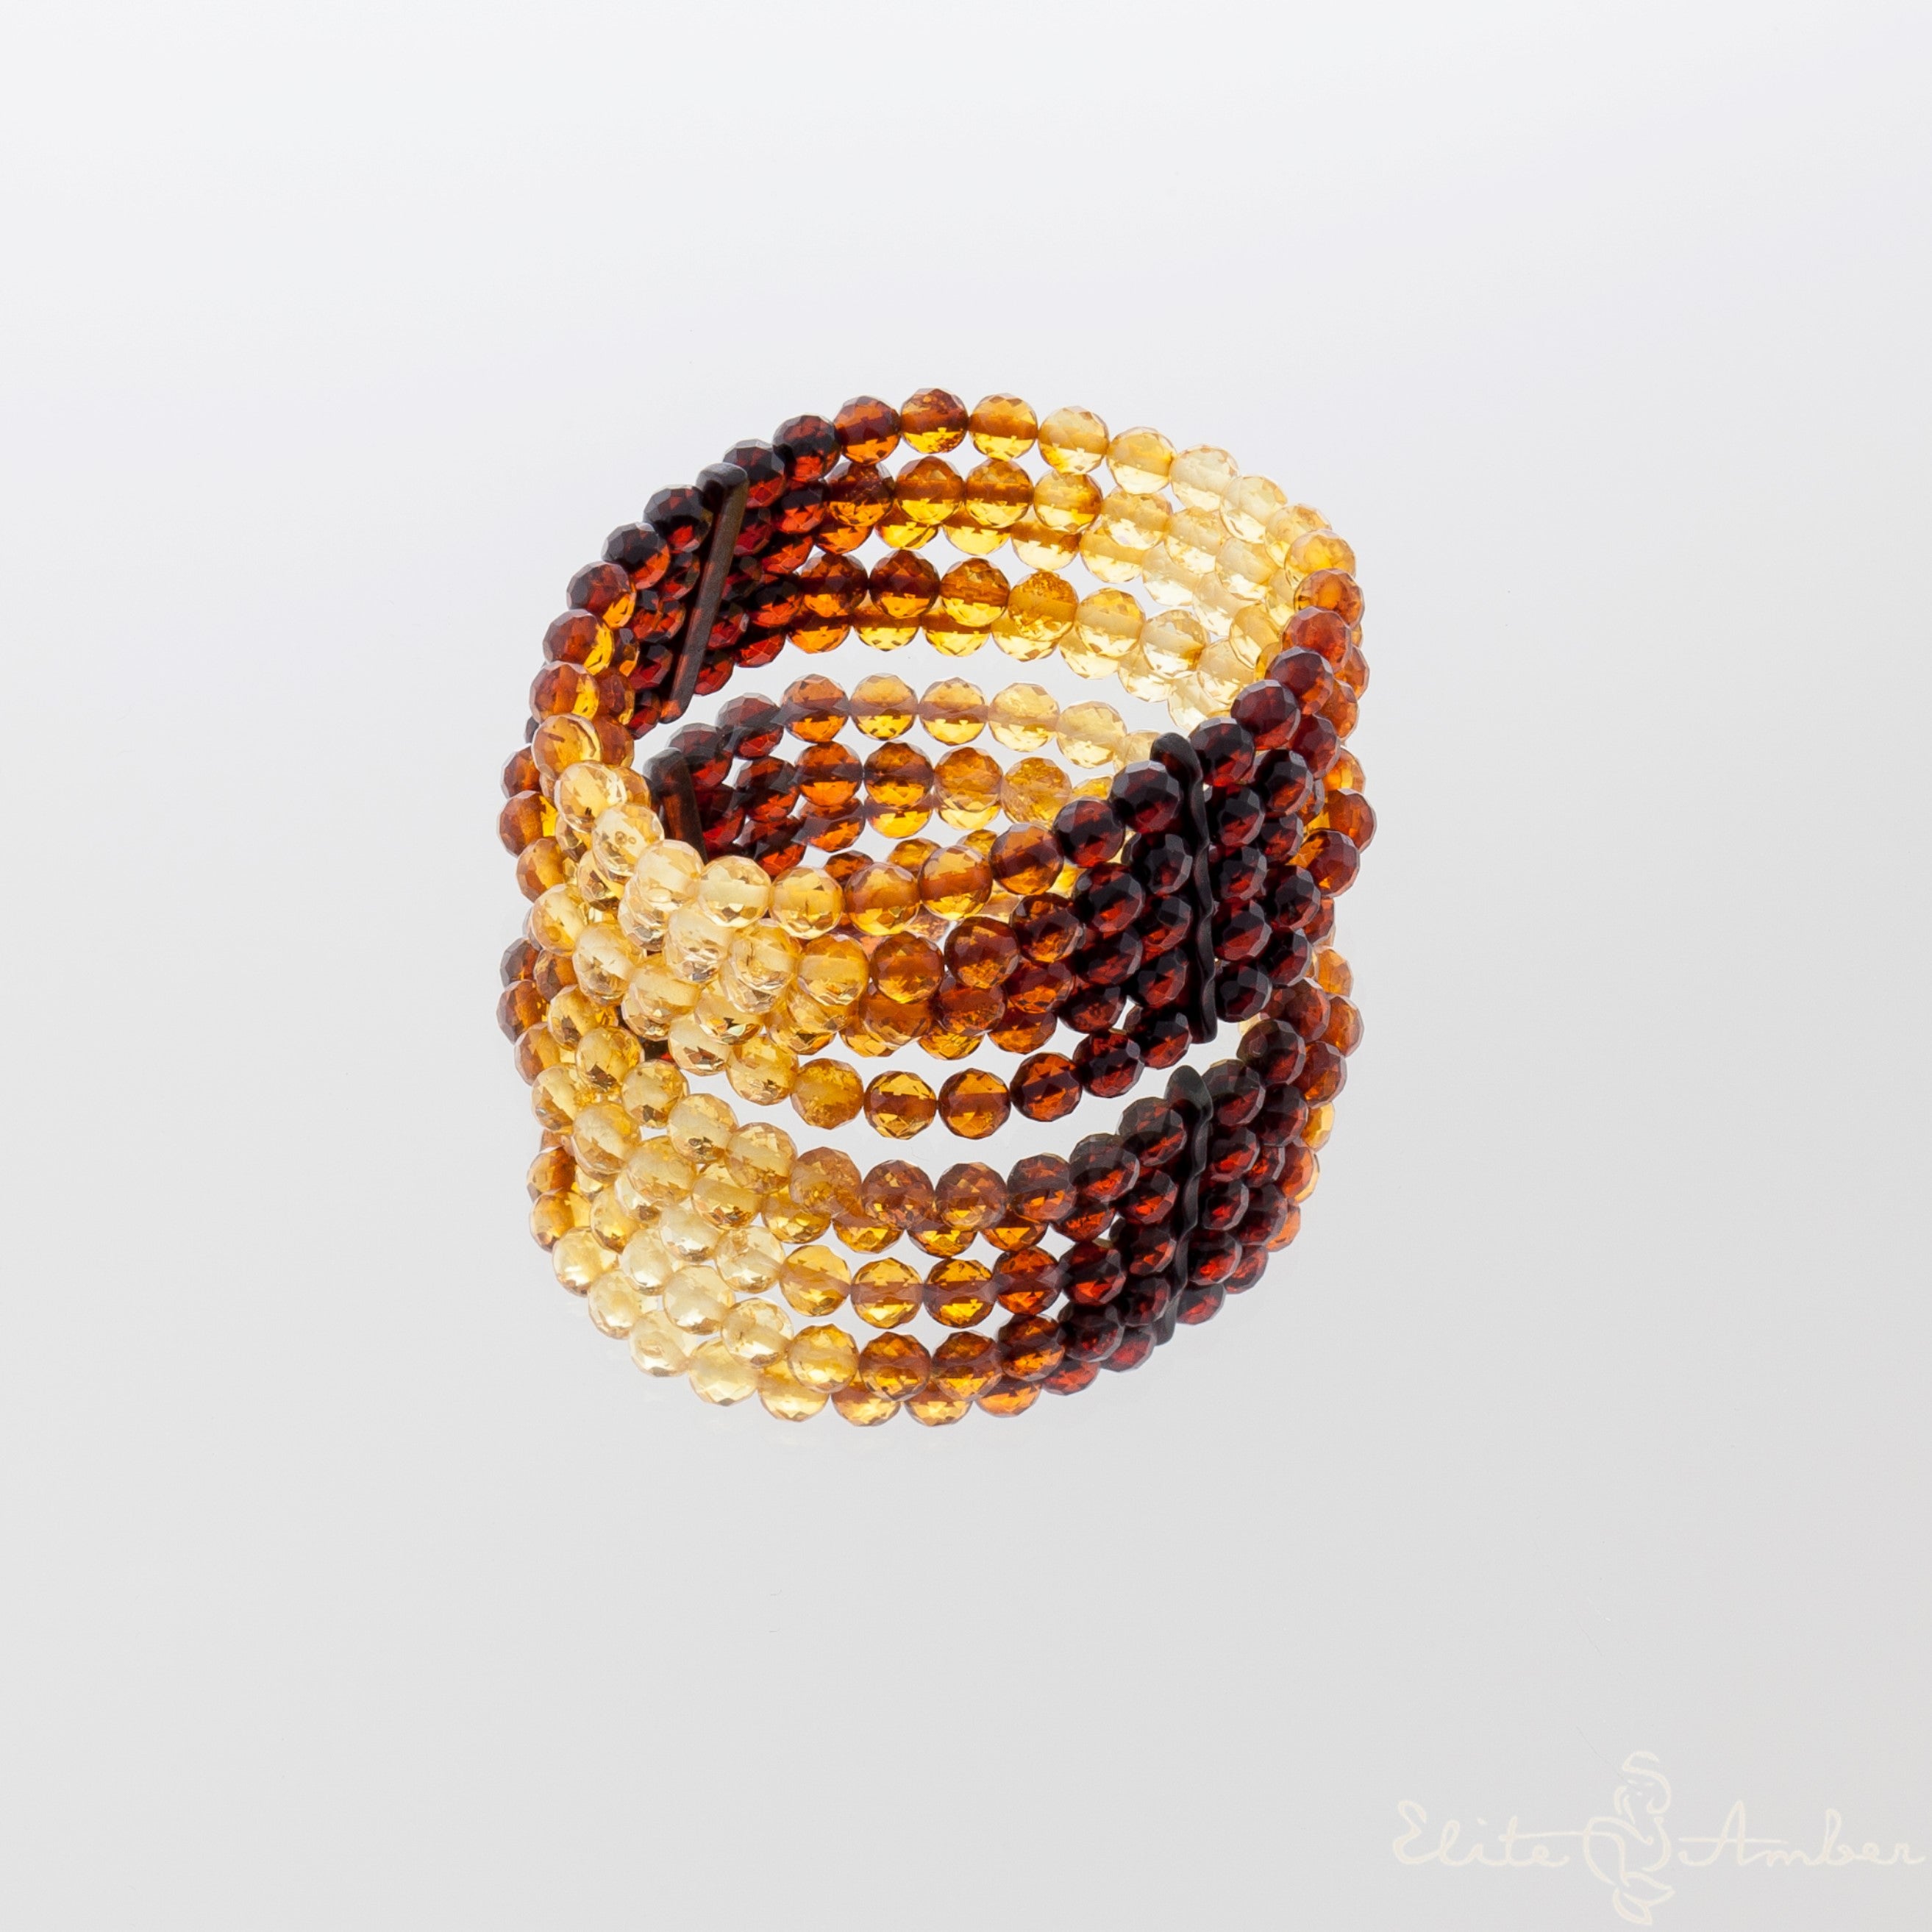 Amber bracelet "Queen rainbow"